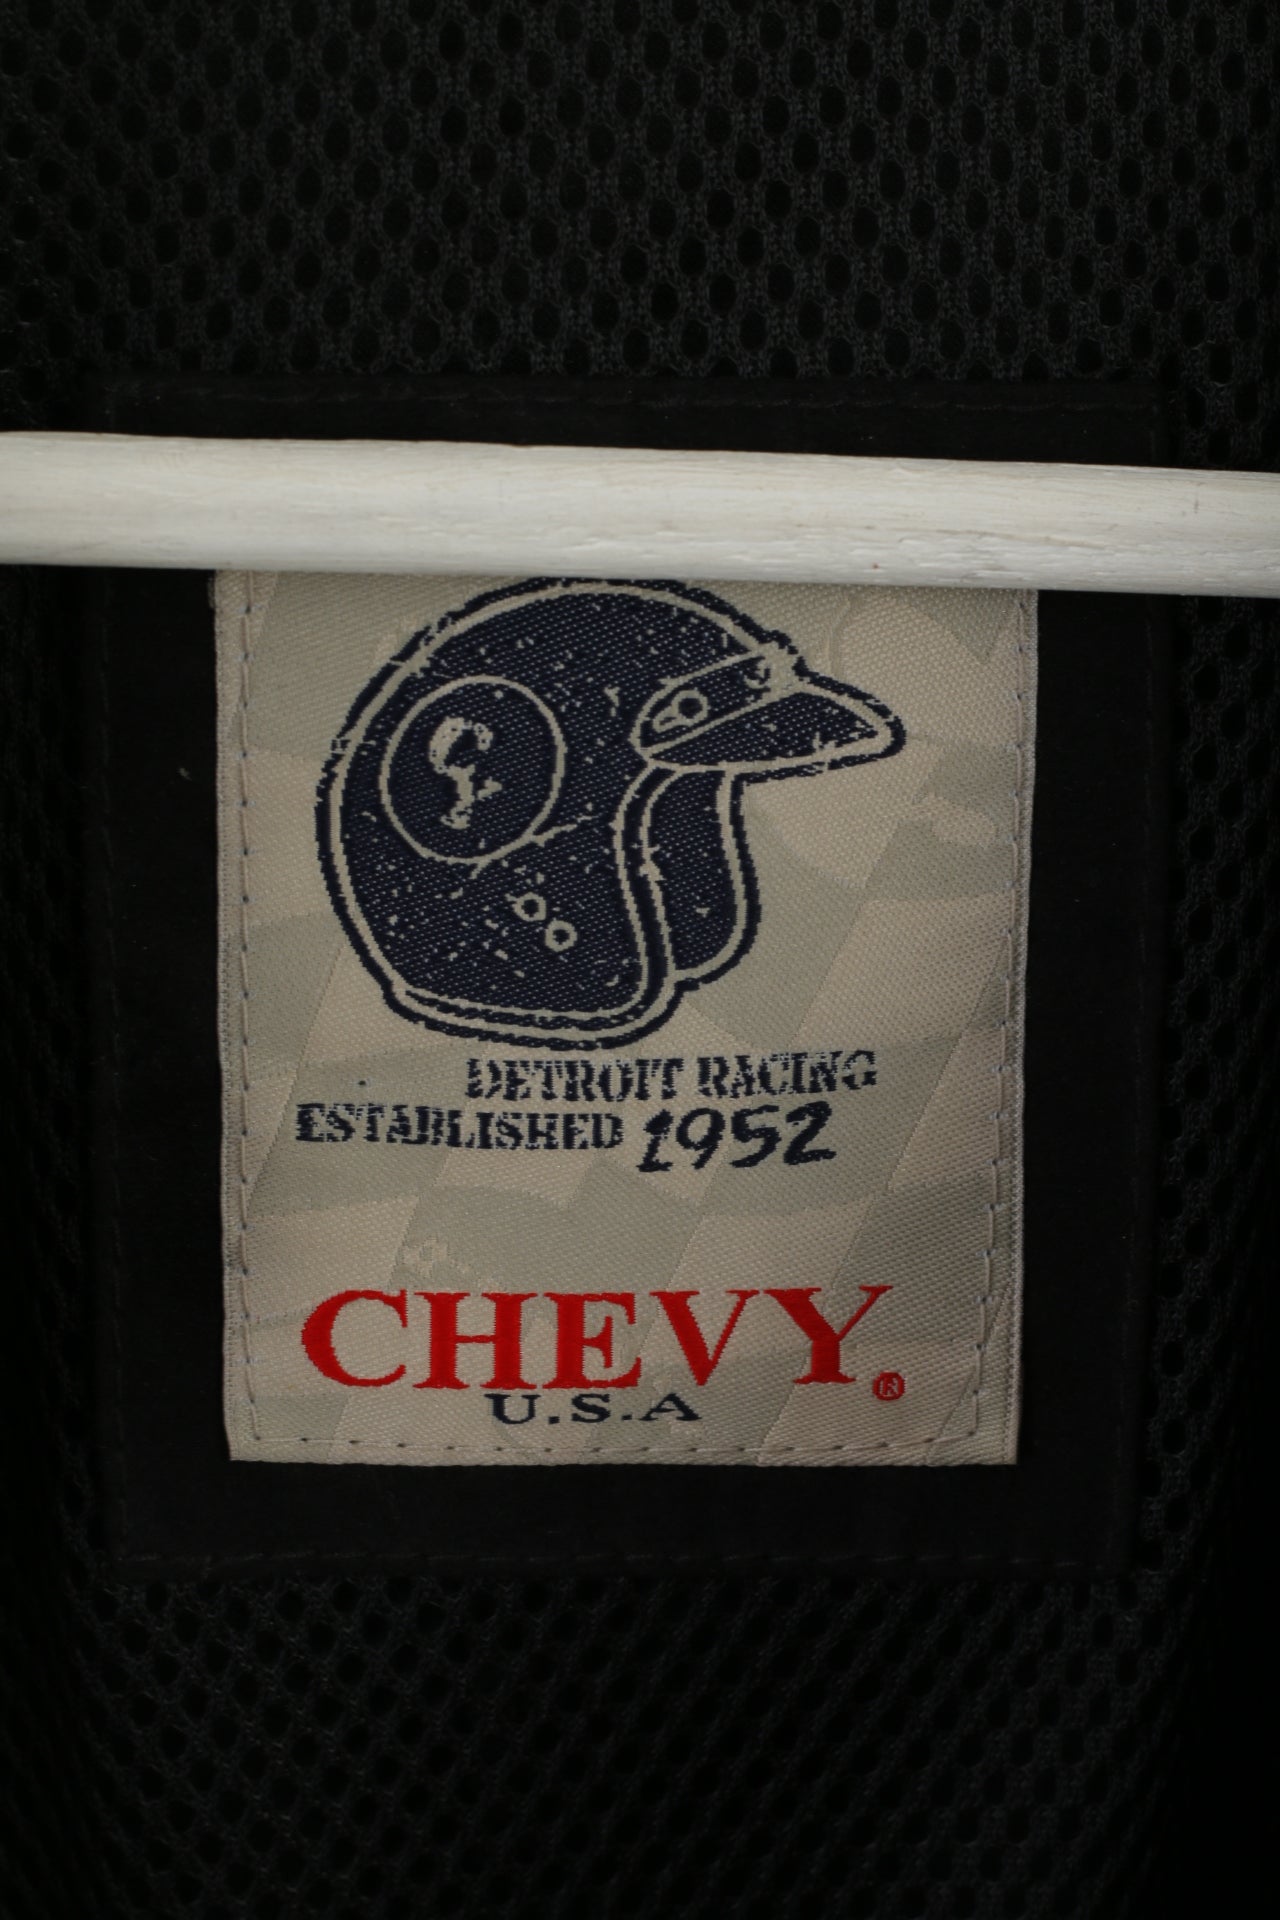 Chevy USA Hommes 56 XL Veste Noir Techno Daim Detroit Racing Zip Up Top